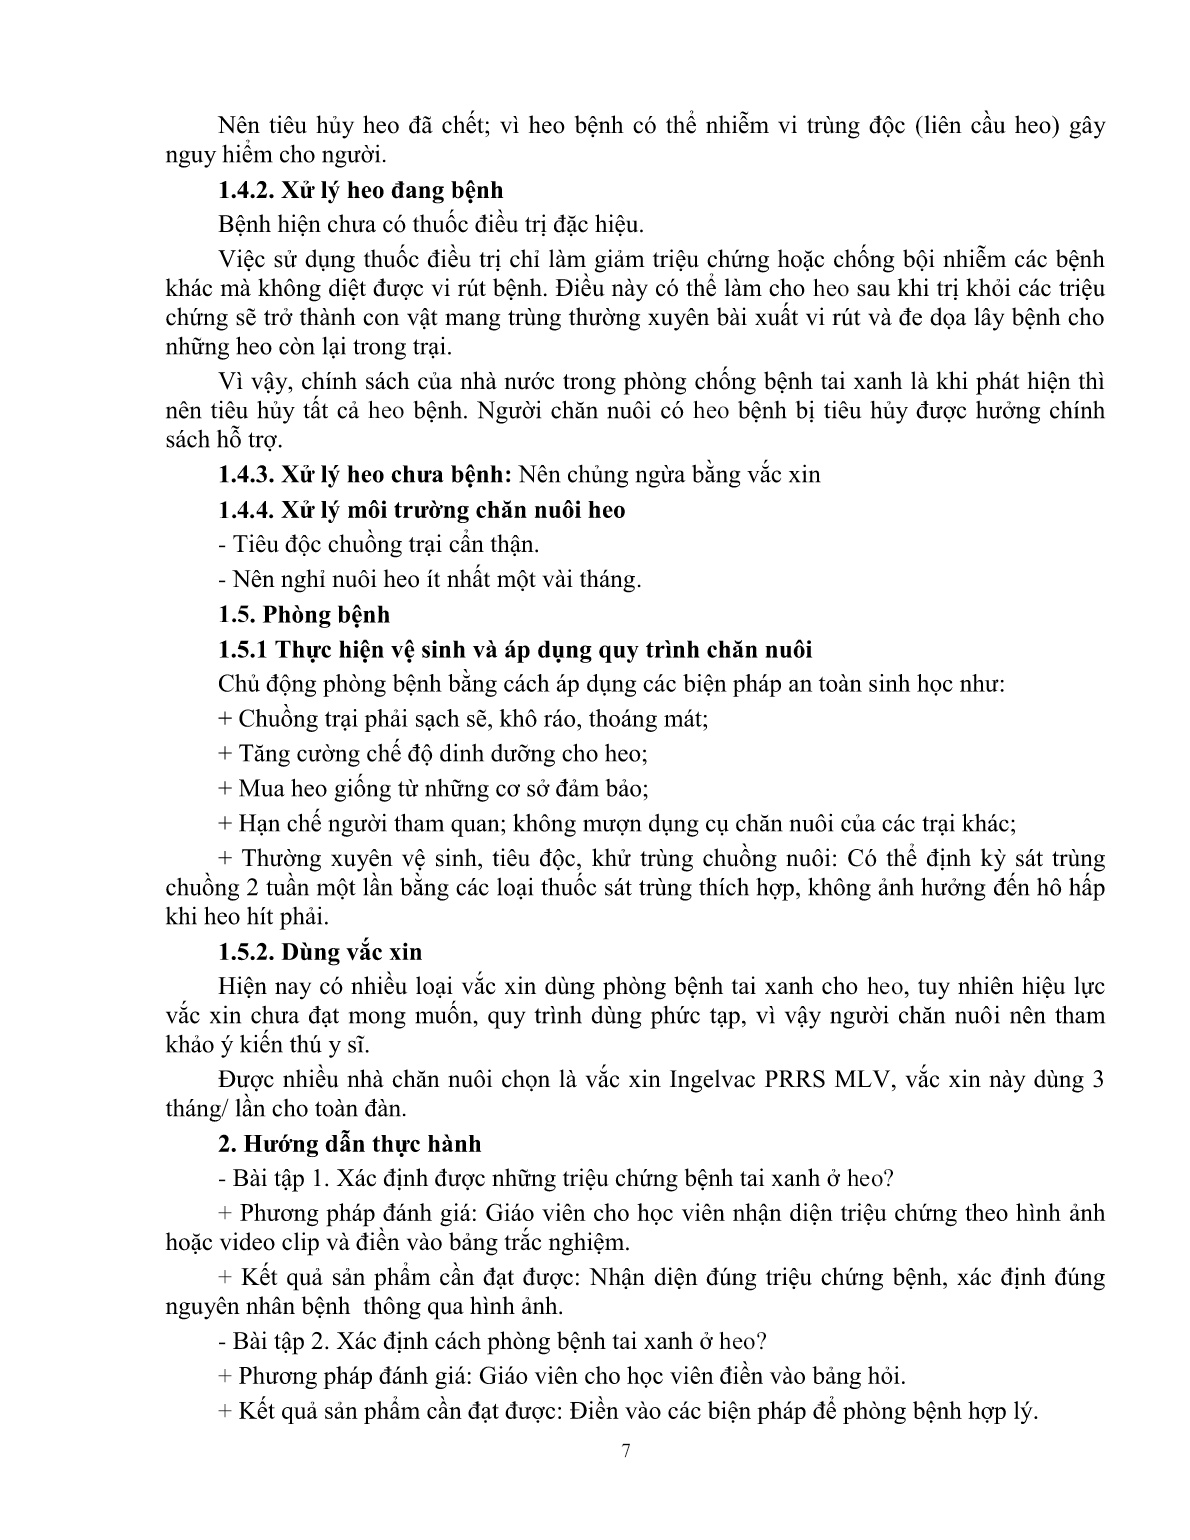 Giáo trình mô đun Phòng và trị bệnh cho heo (Trình độ: Đào tạo dưới 03 tháng) trang 8